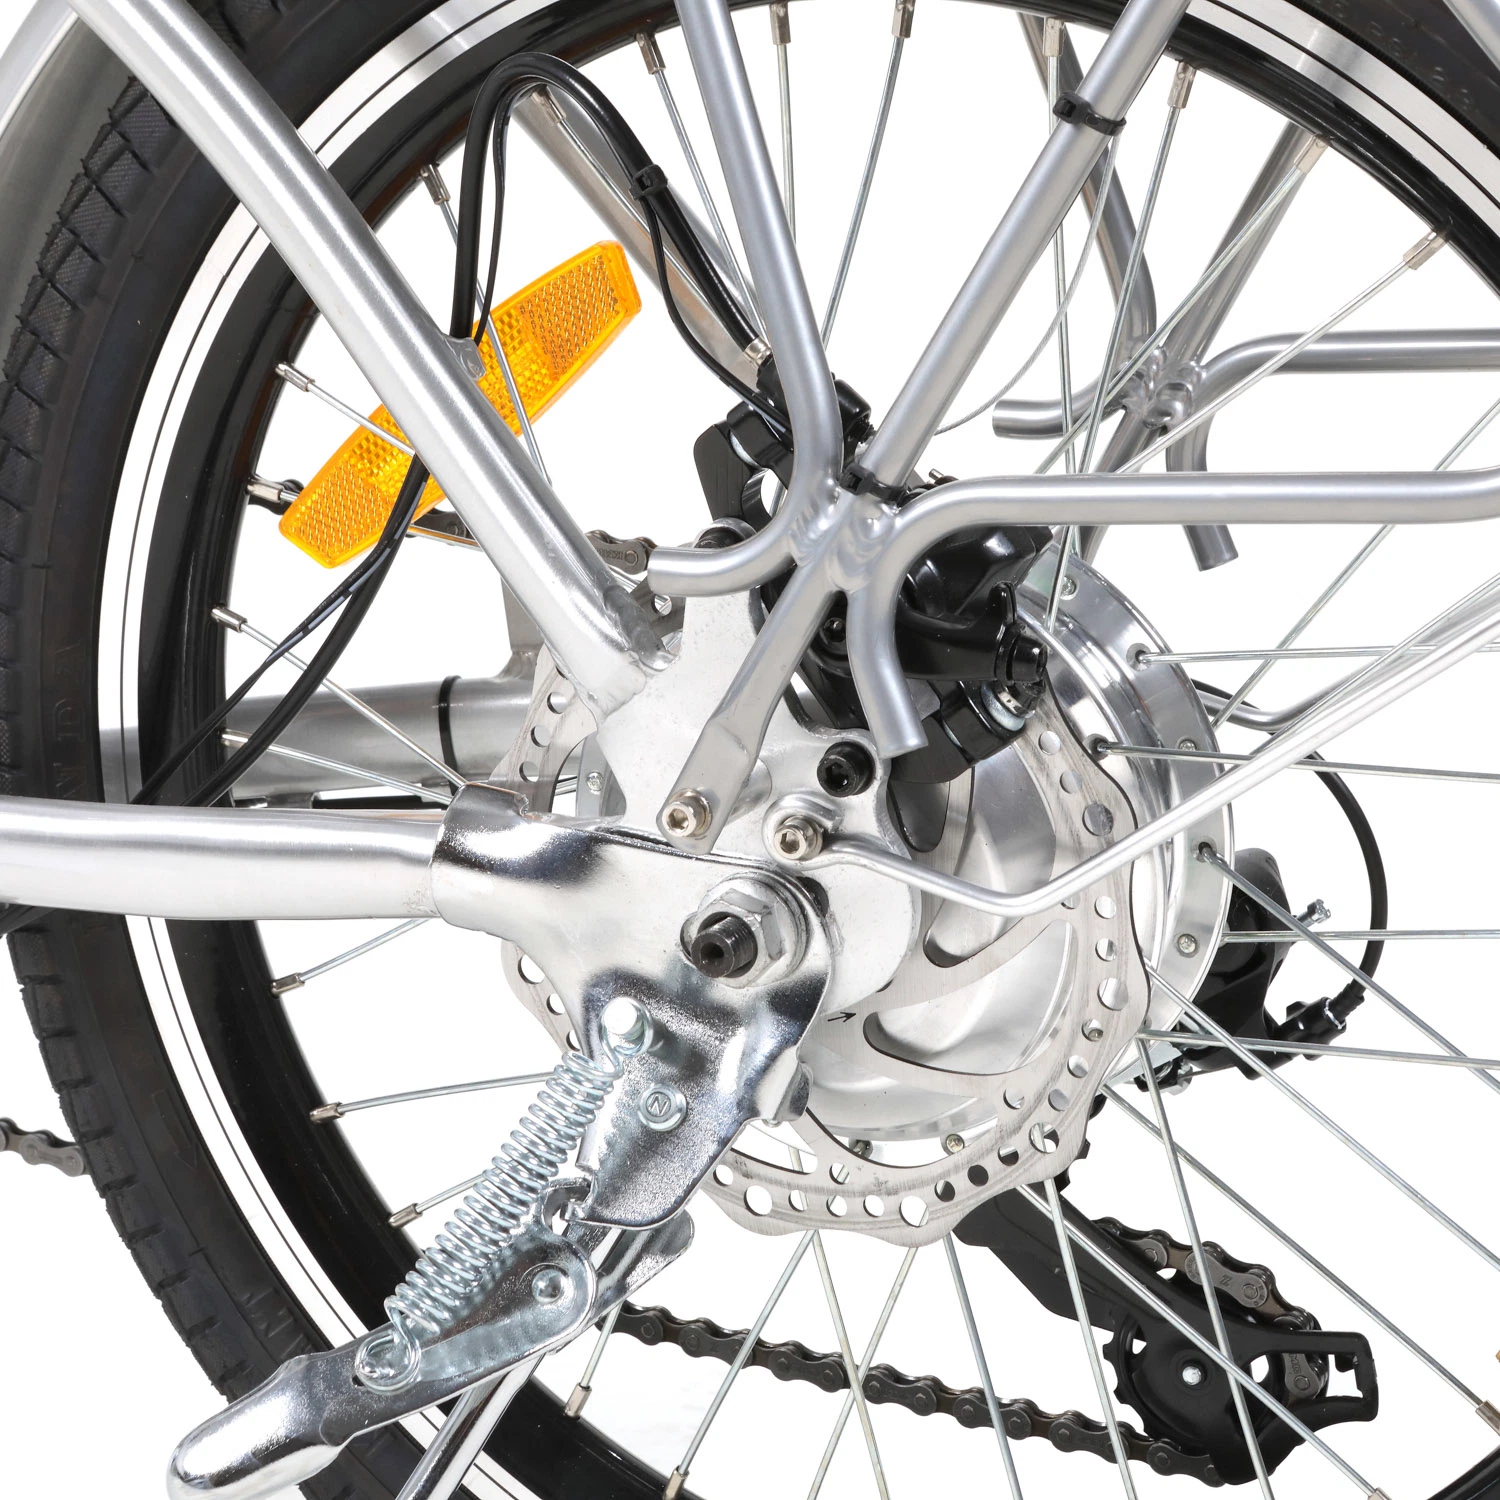 250W 20 pouces pliable vélo électrique Ebike Certification Ce bon marché chaud électrique pliant Pocket Bike